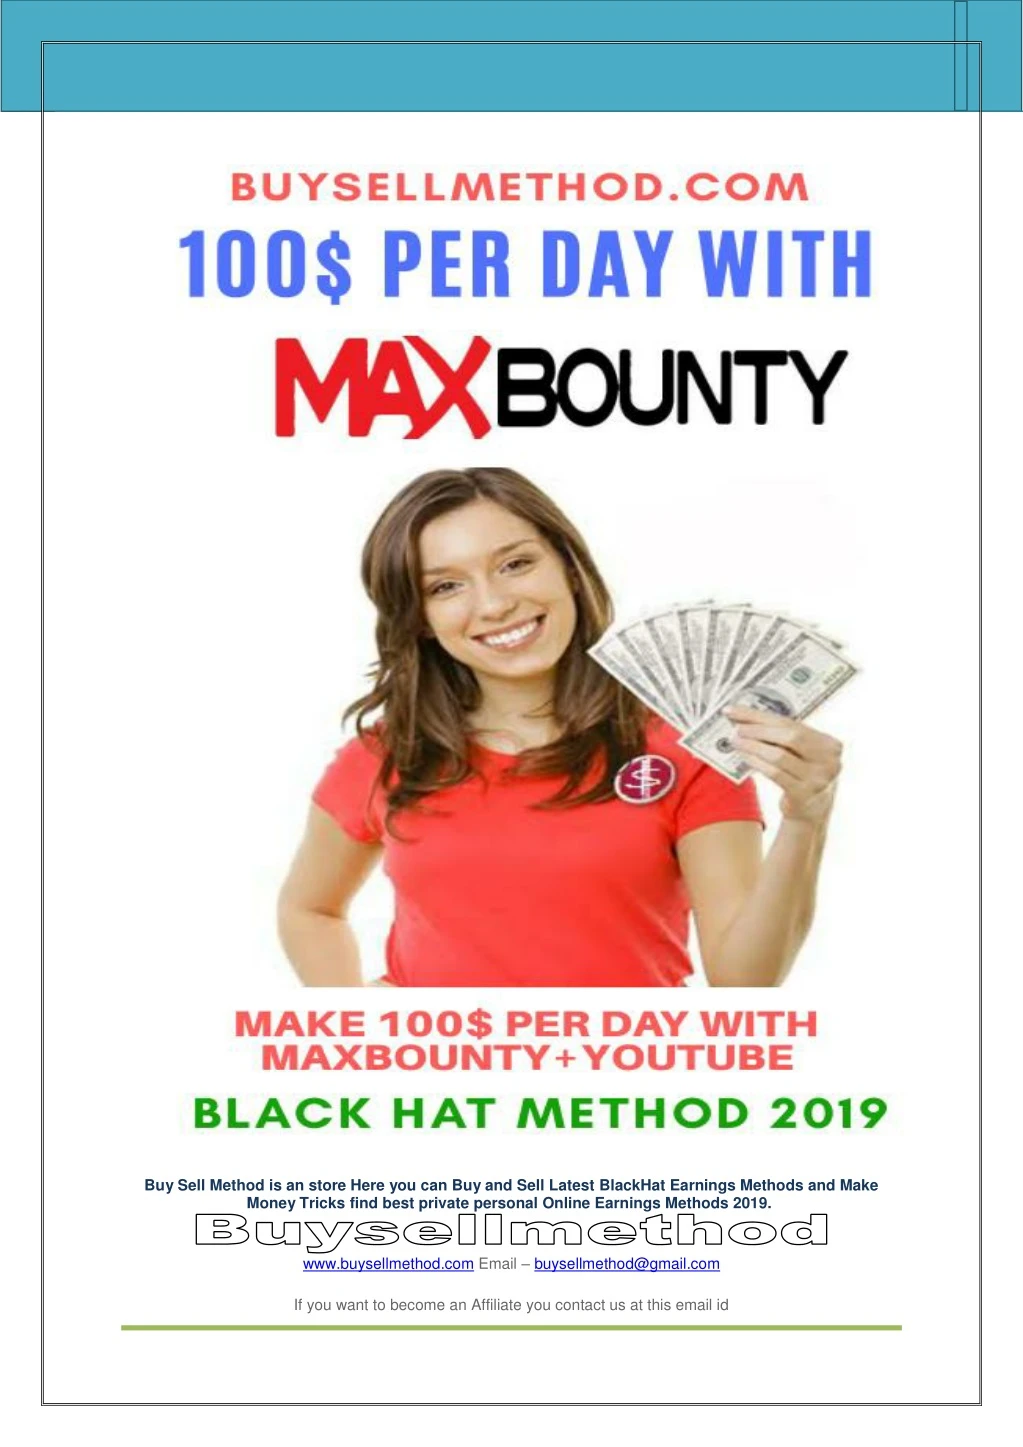 maxbounty youtube earnings method autopilot 2019